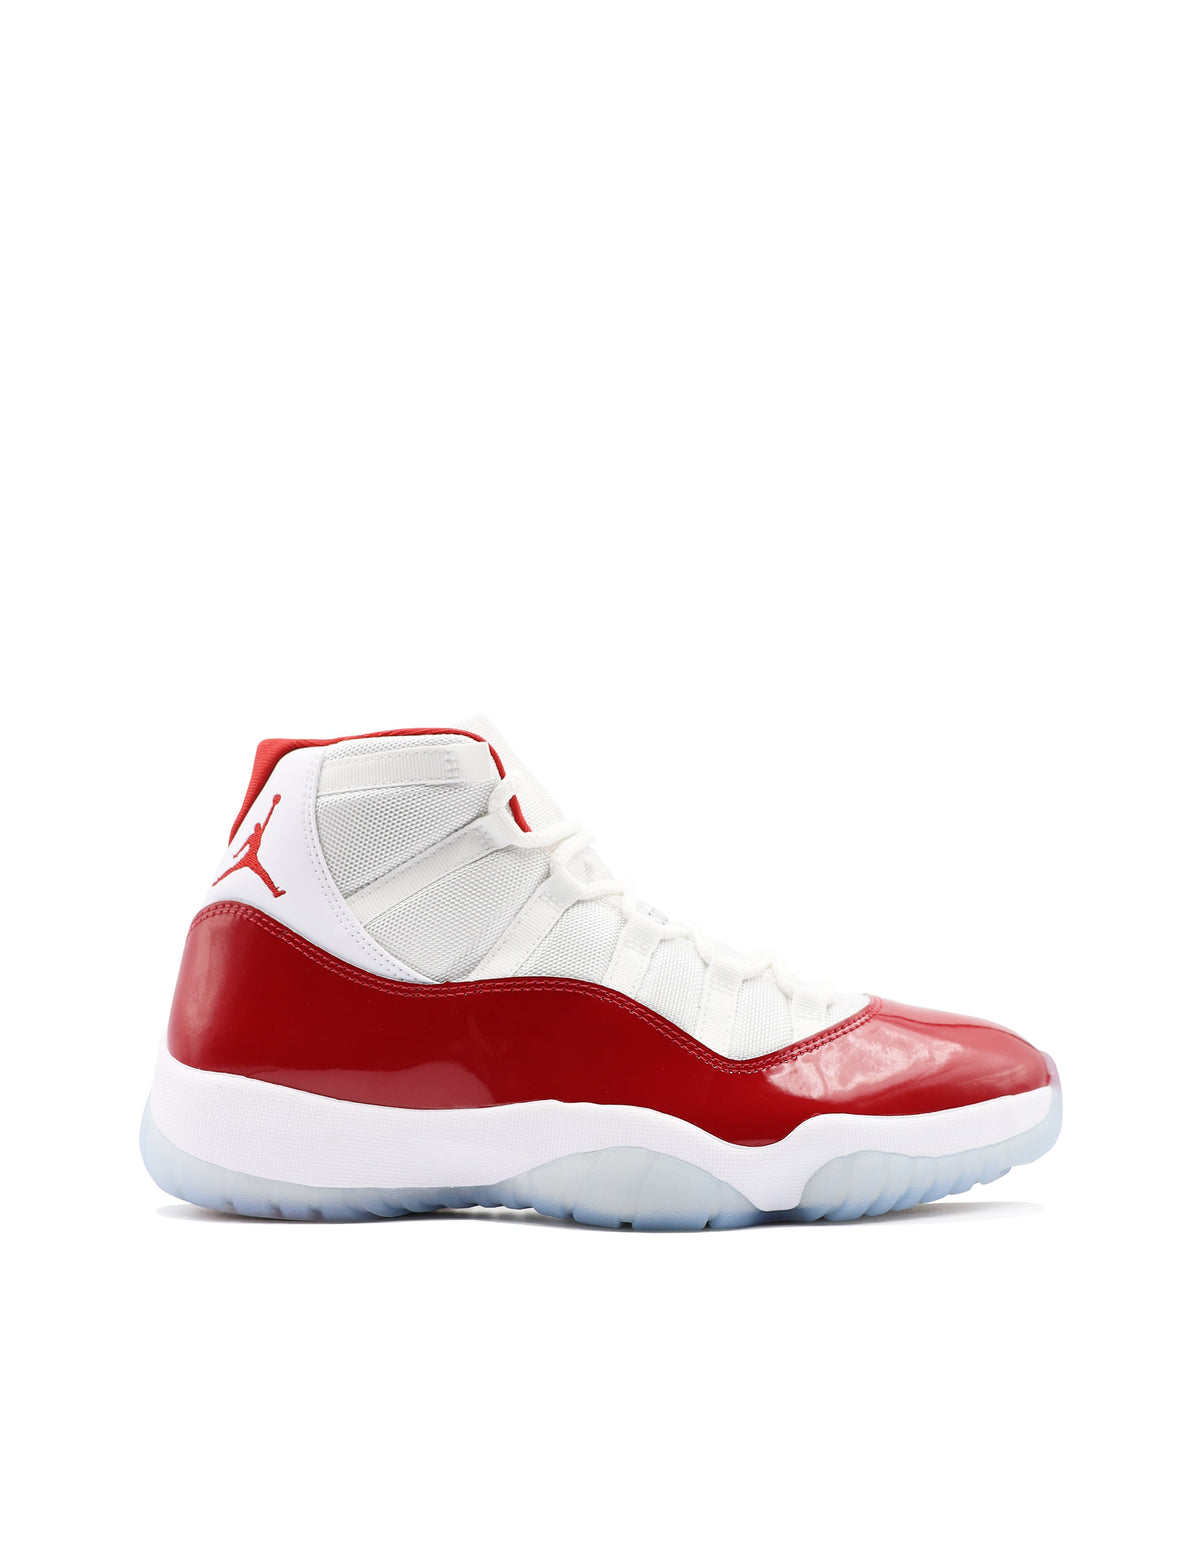 Jordan 11 Retro "Cherry" (2022)